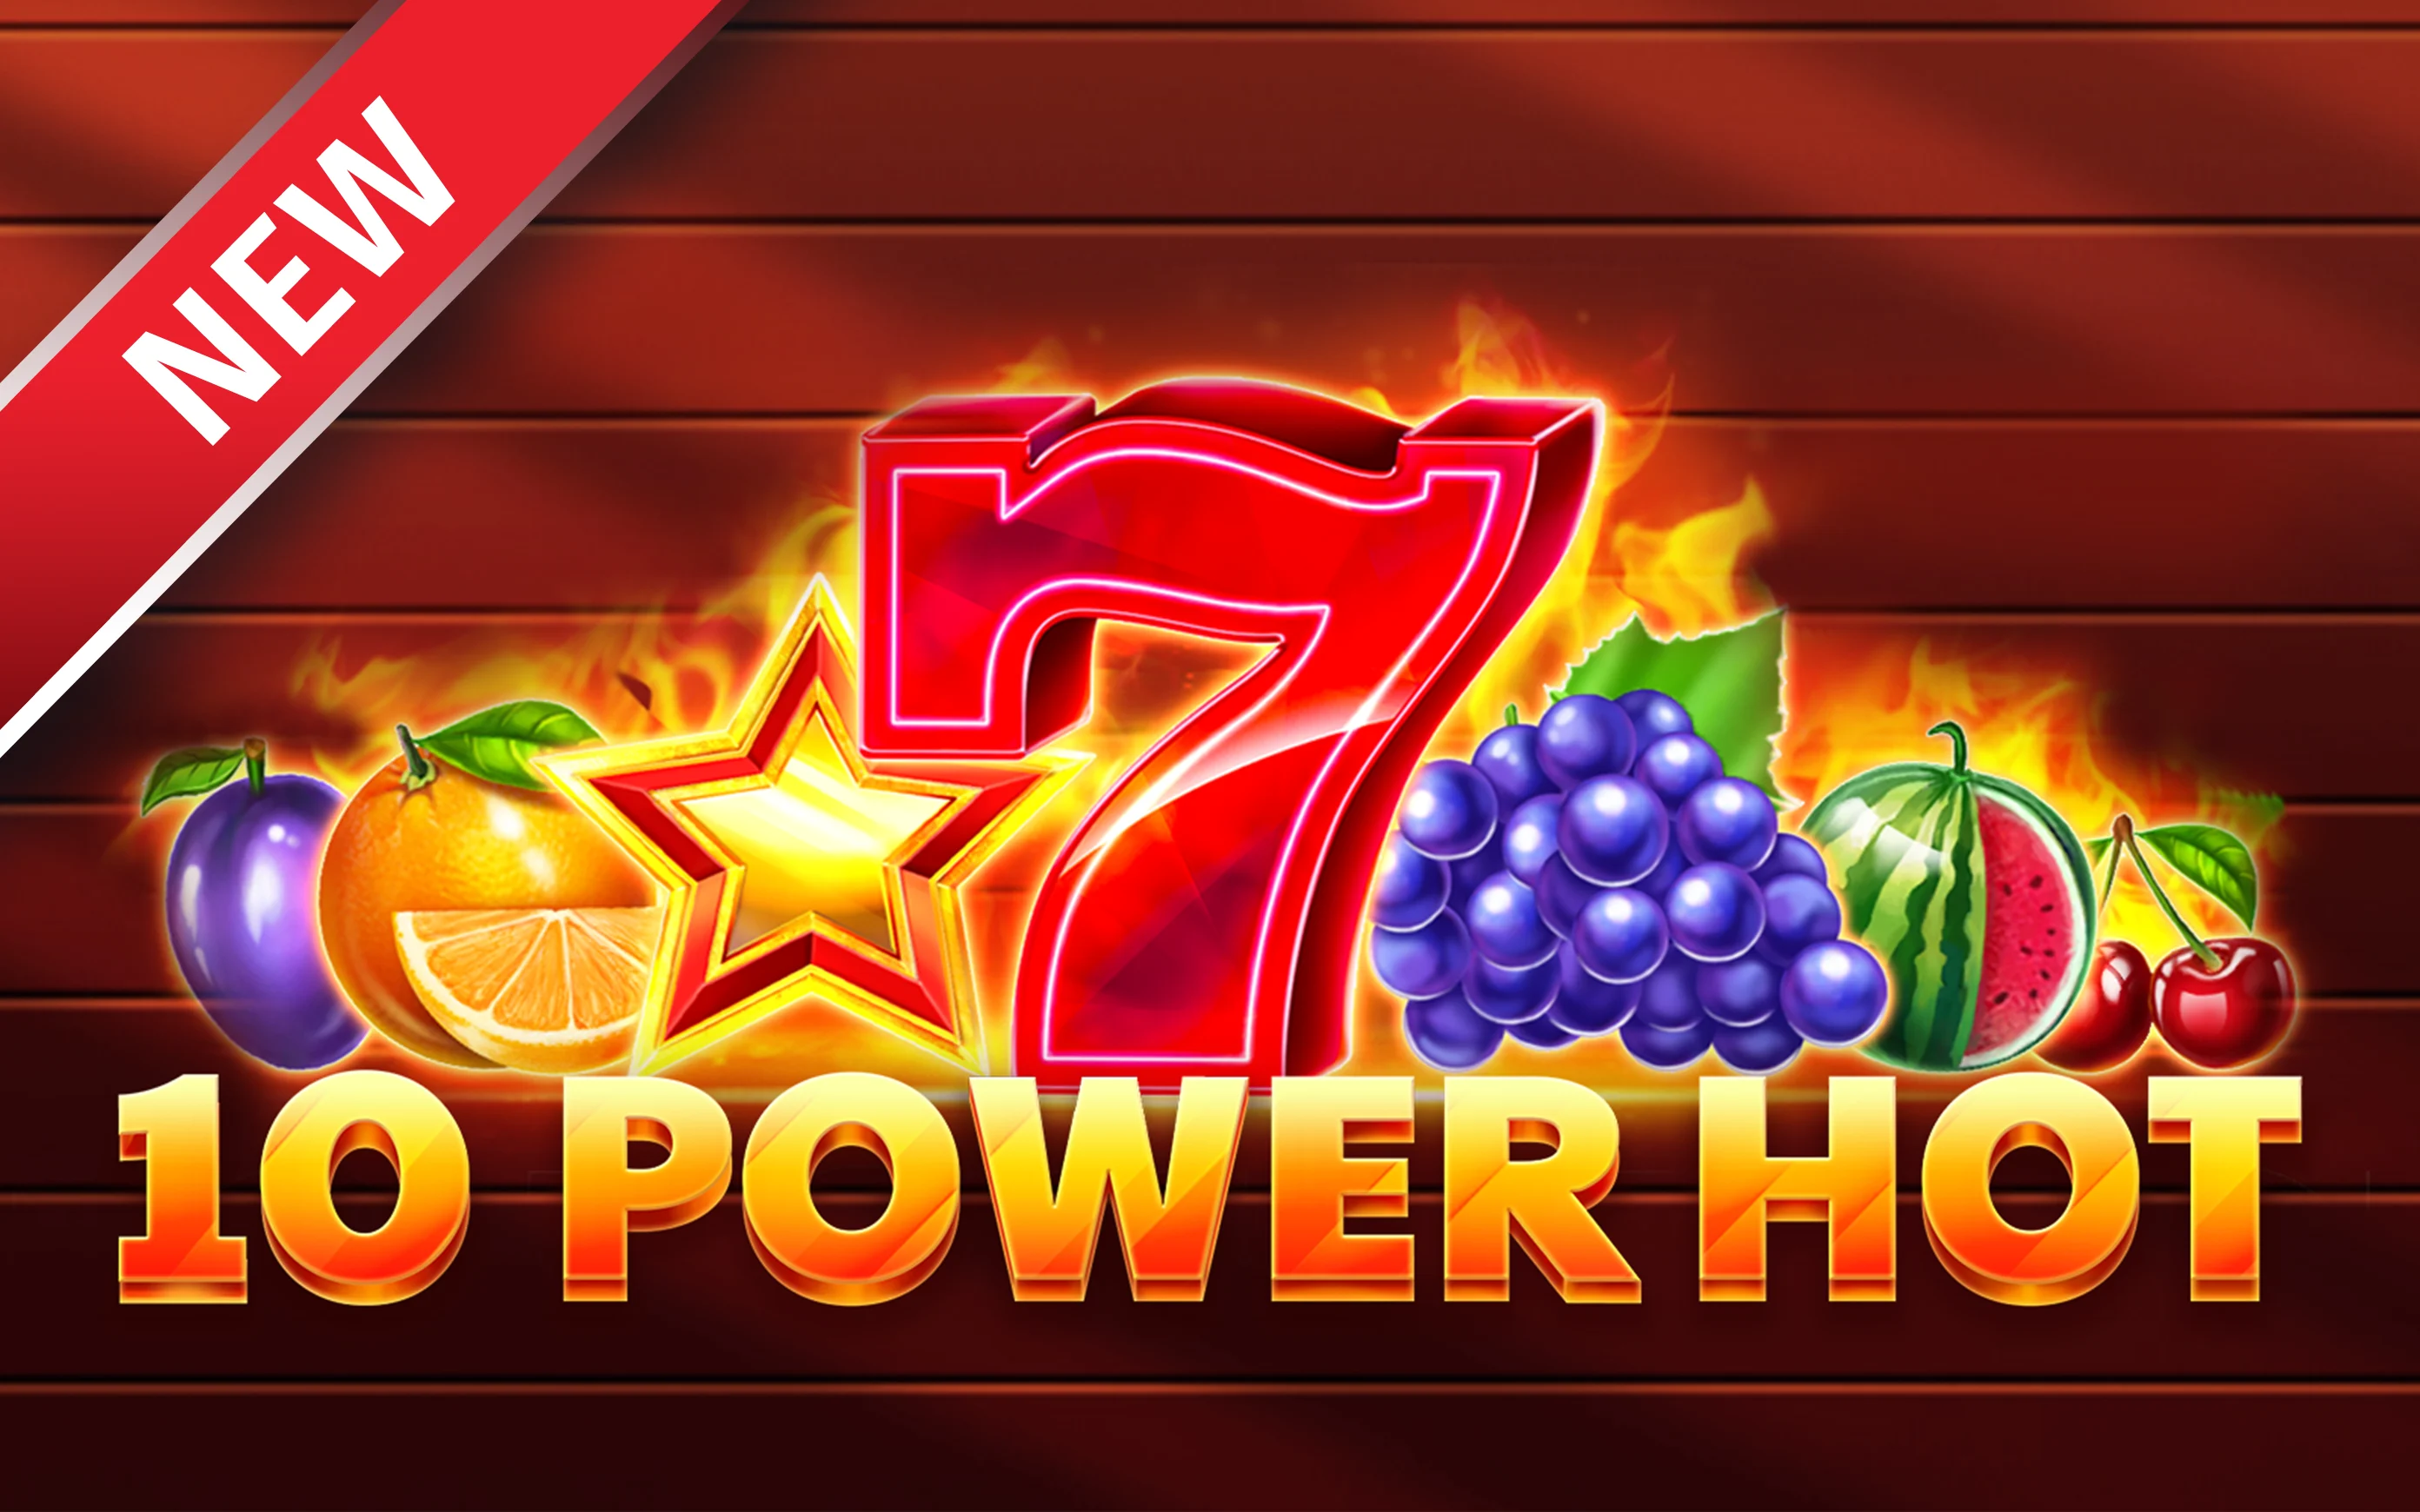 Play 10 Power Hot on Starcasino.be online casino